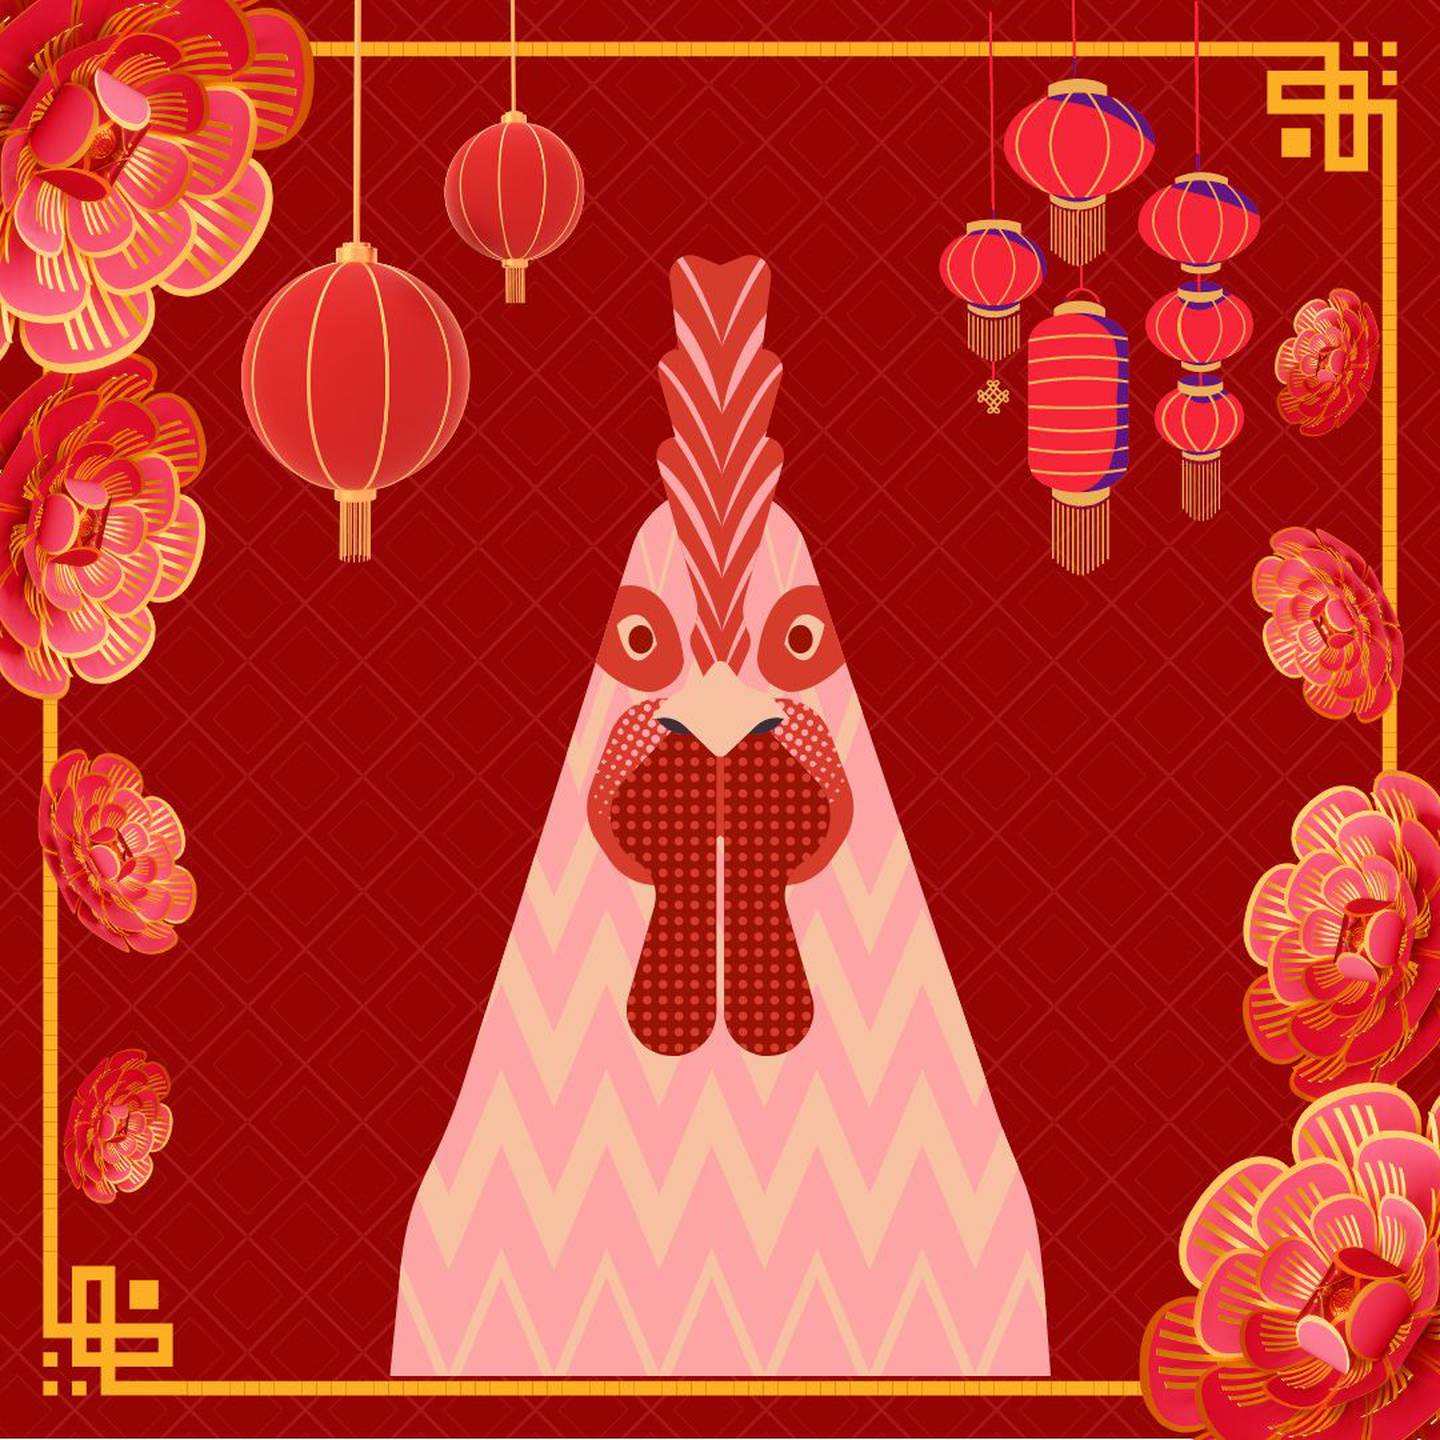 Imagen de la caricatura de un gallo sobre un fondo rojo, decorado con motivos orientales.